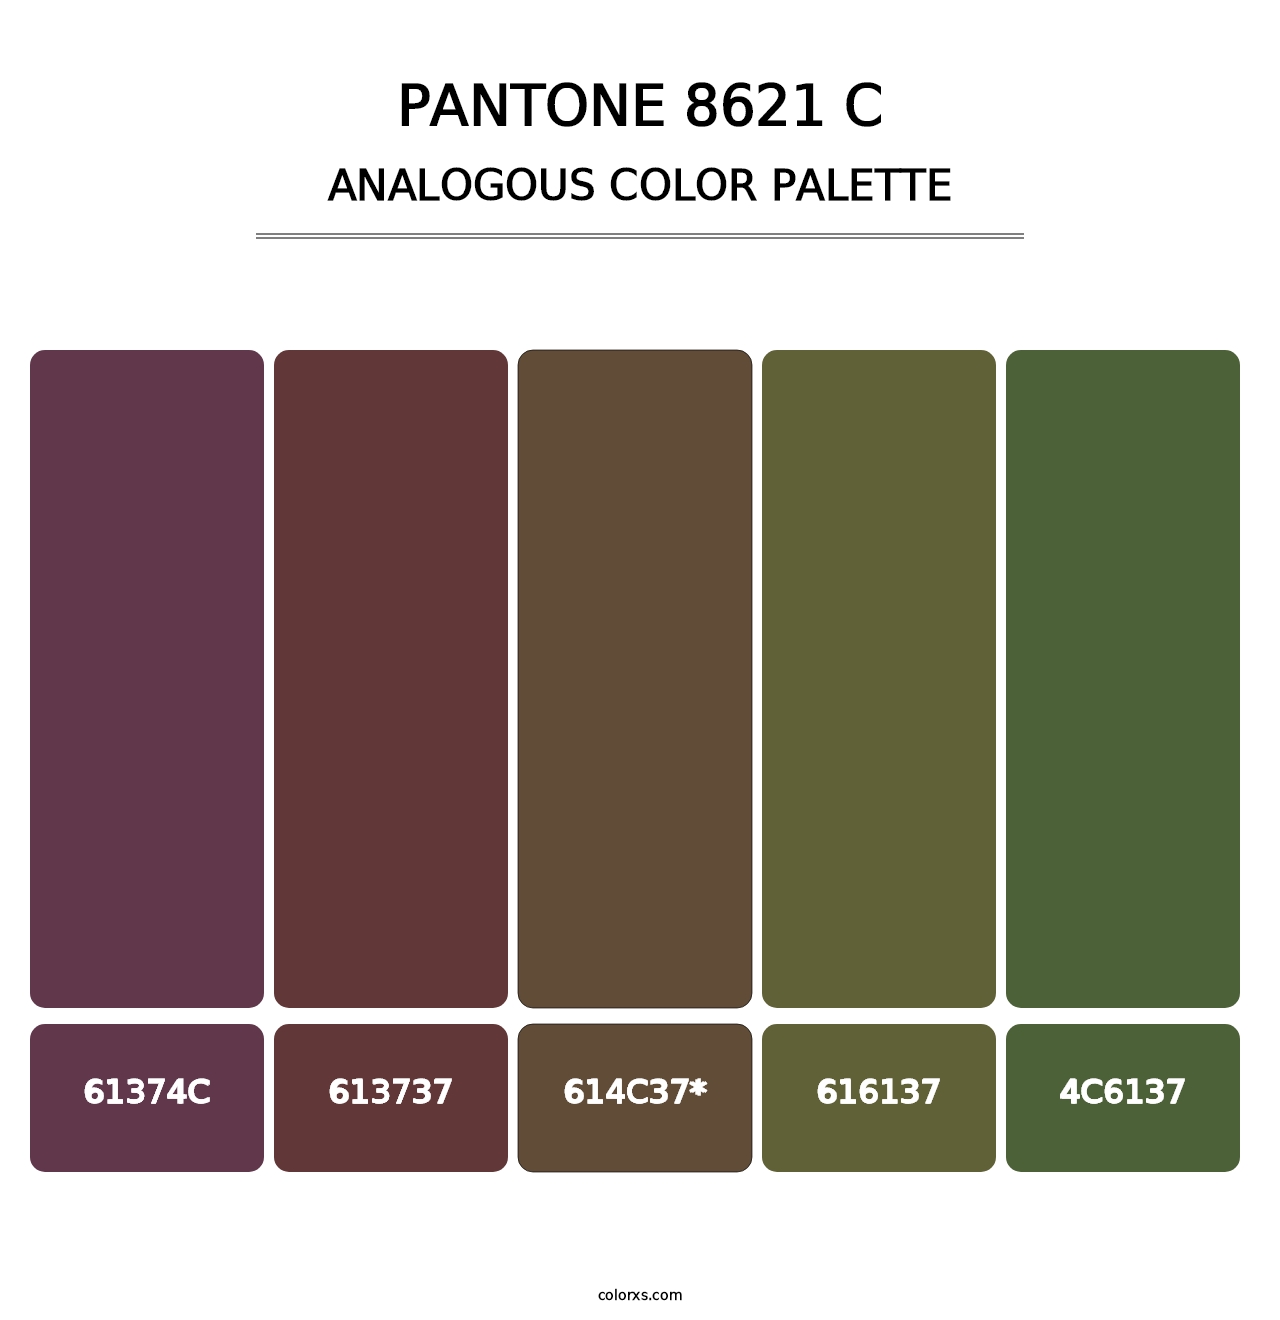 PANTONE 8621 C - Analogous Color Palette